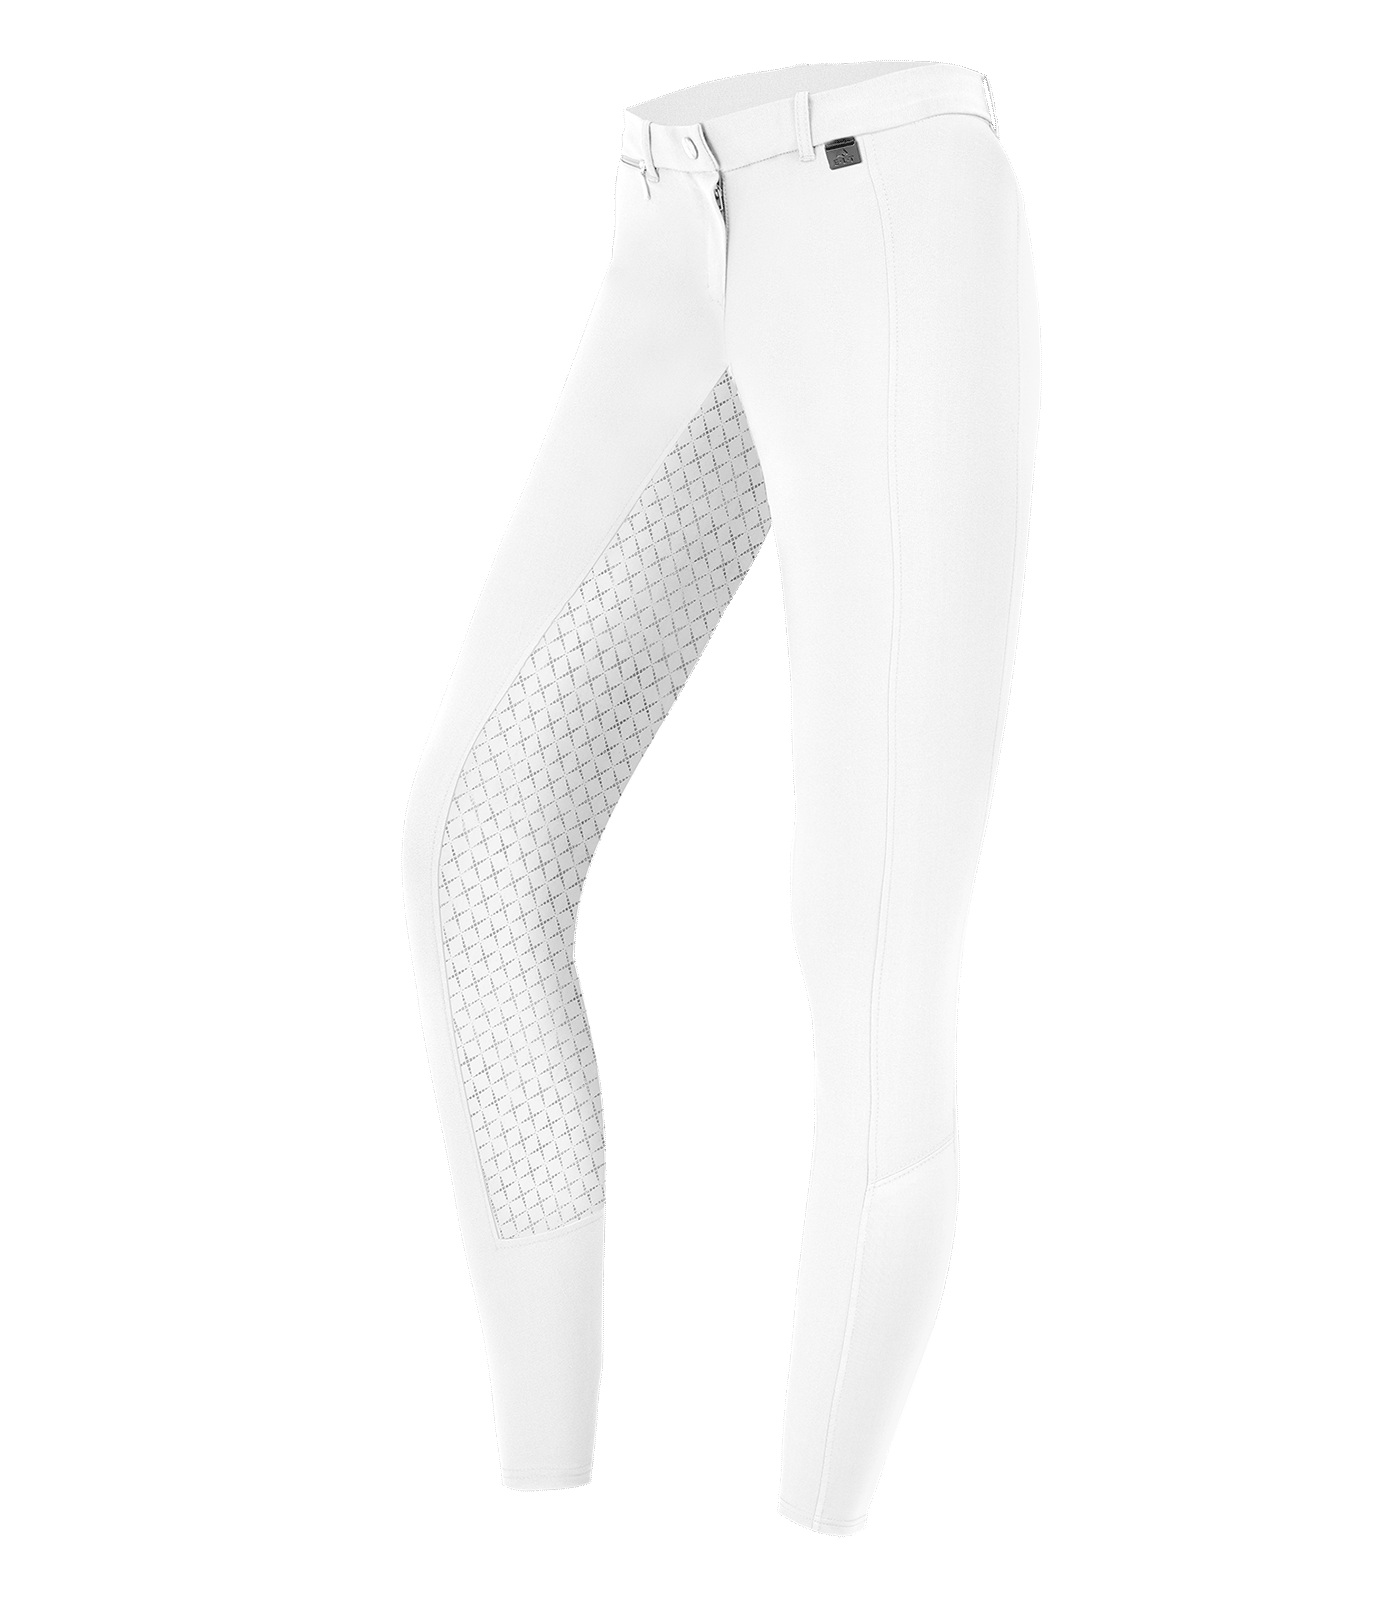 Reithose Micro Sport Silikon weiß